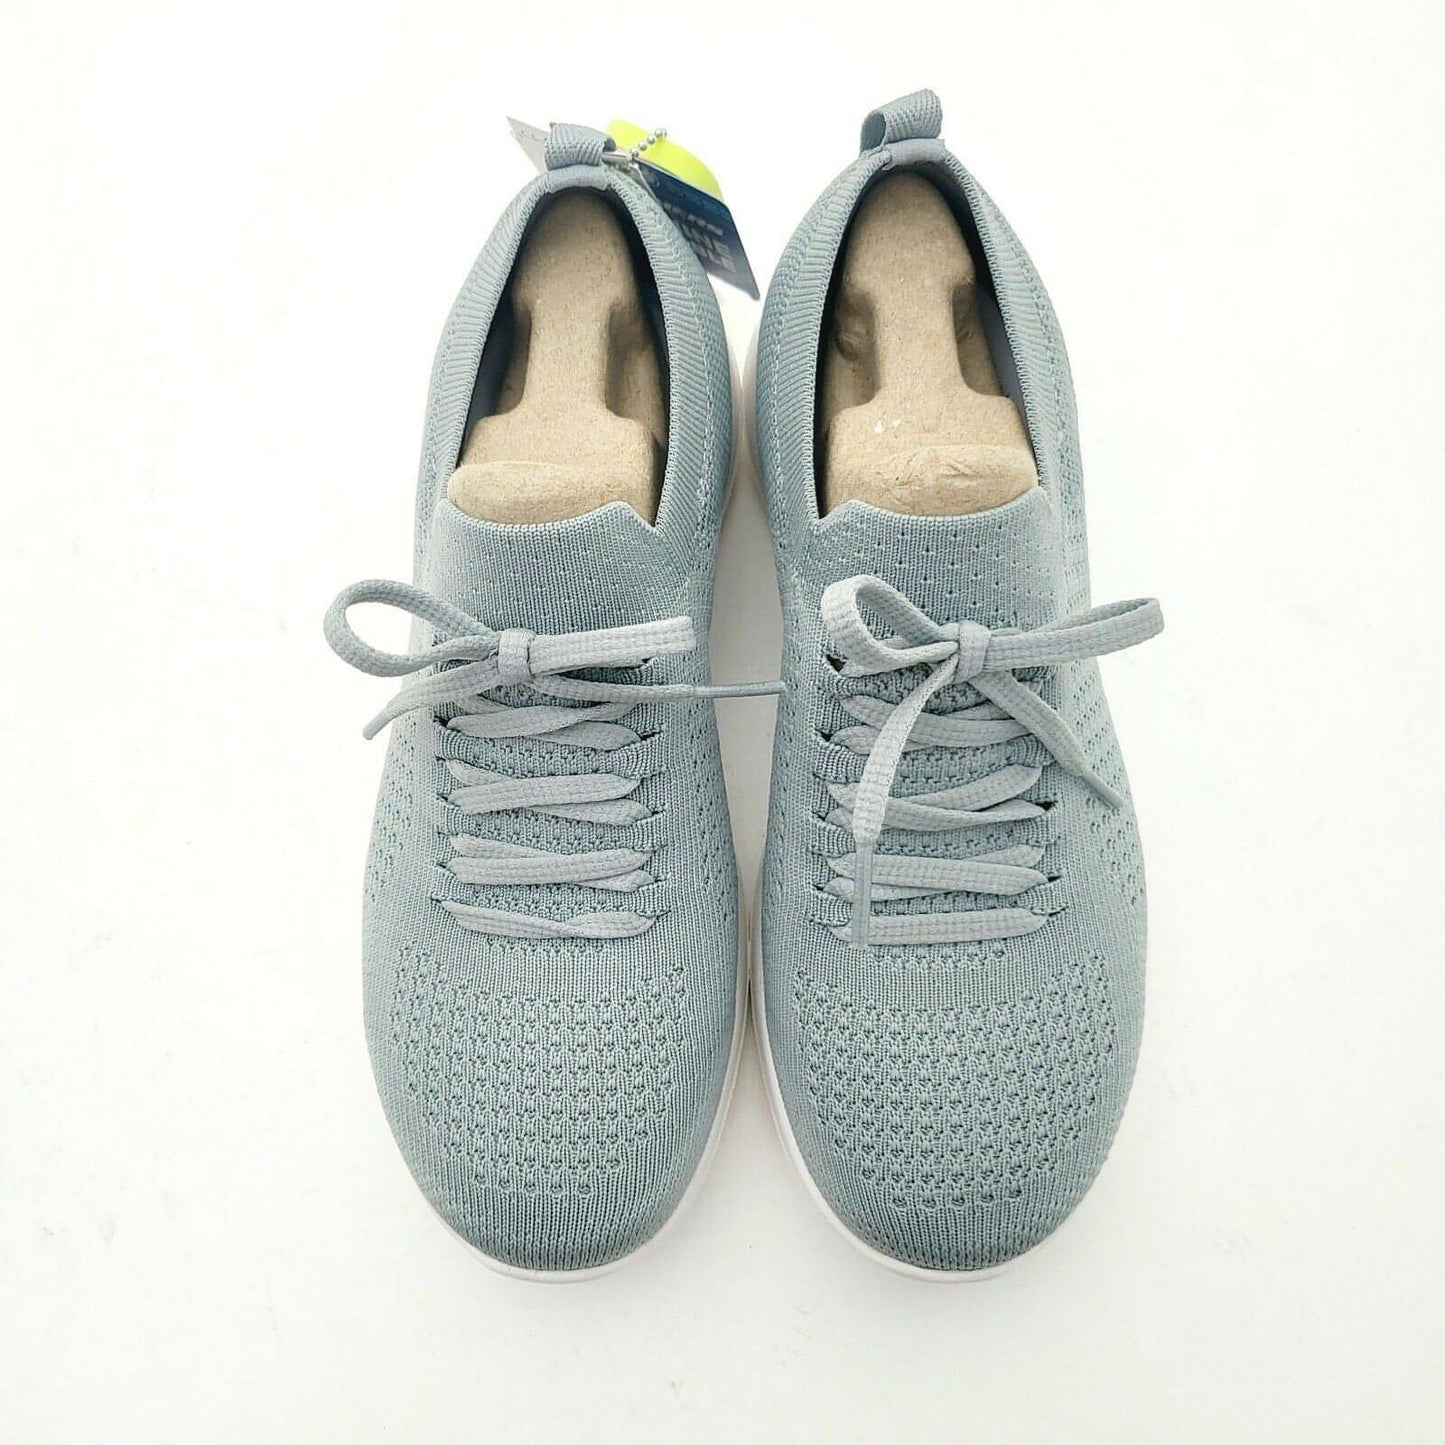 SKECHERS Women's GO Walk Joy Fresh View Mesh Sneakers Slip On Shoe (Grey) - Brandat Outlet